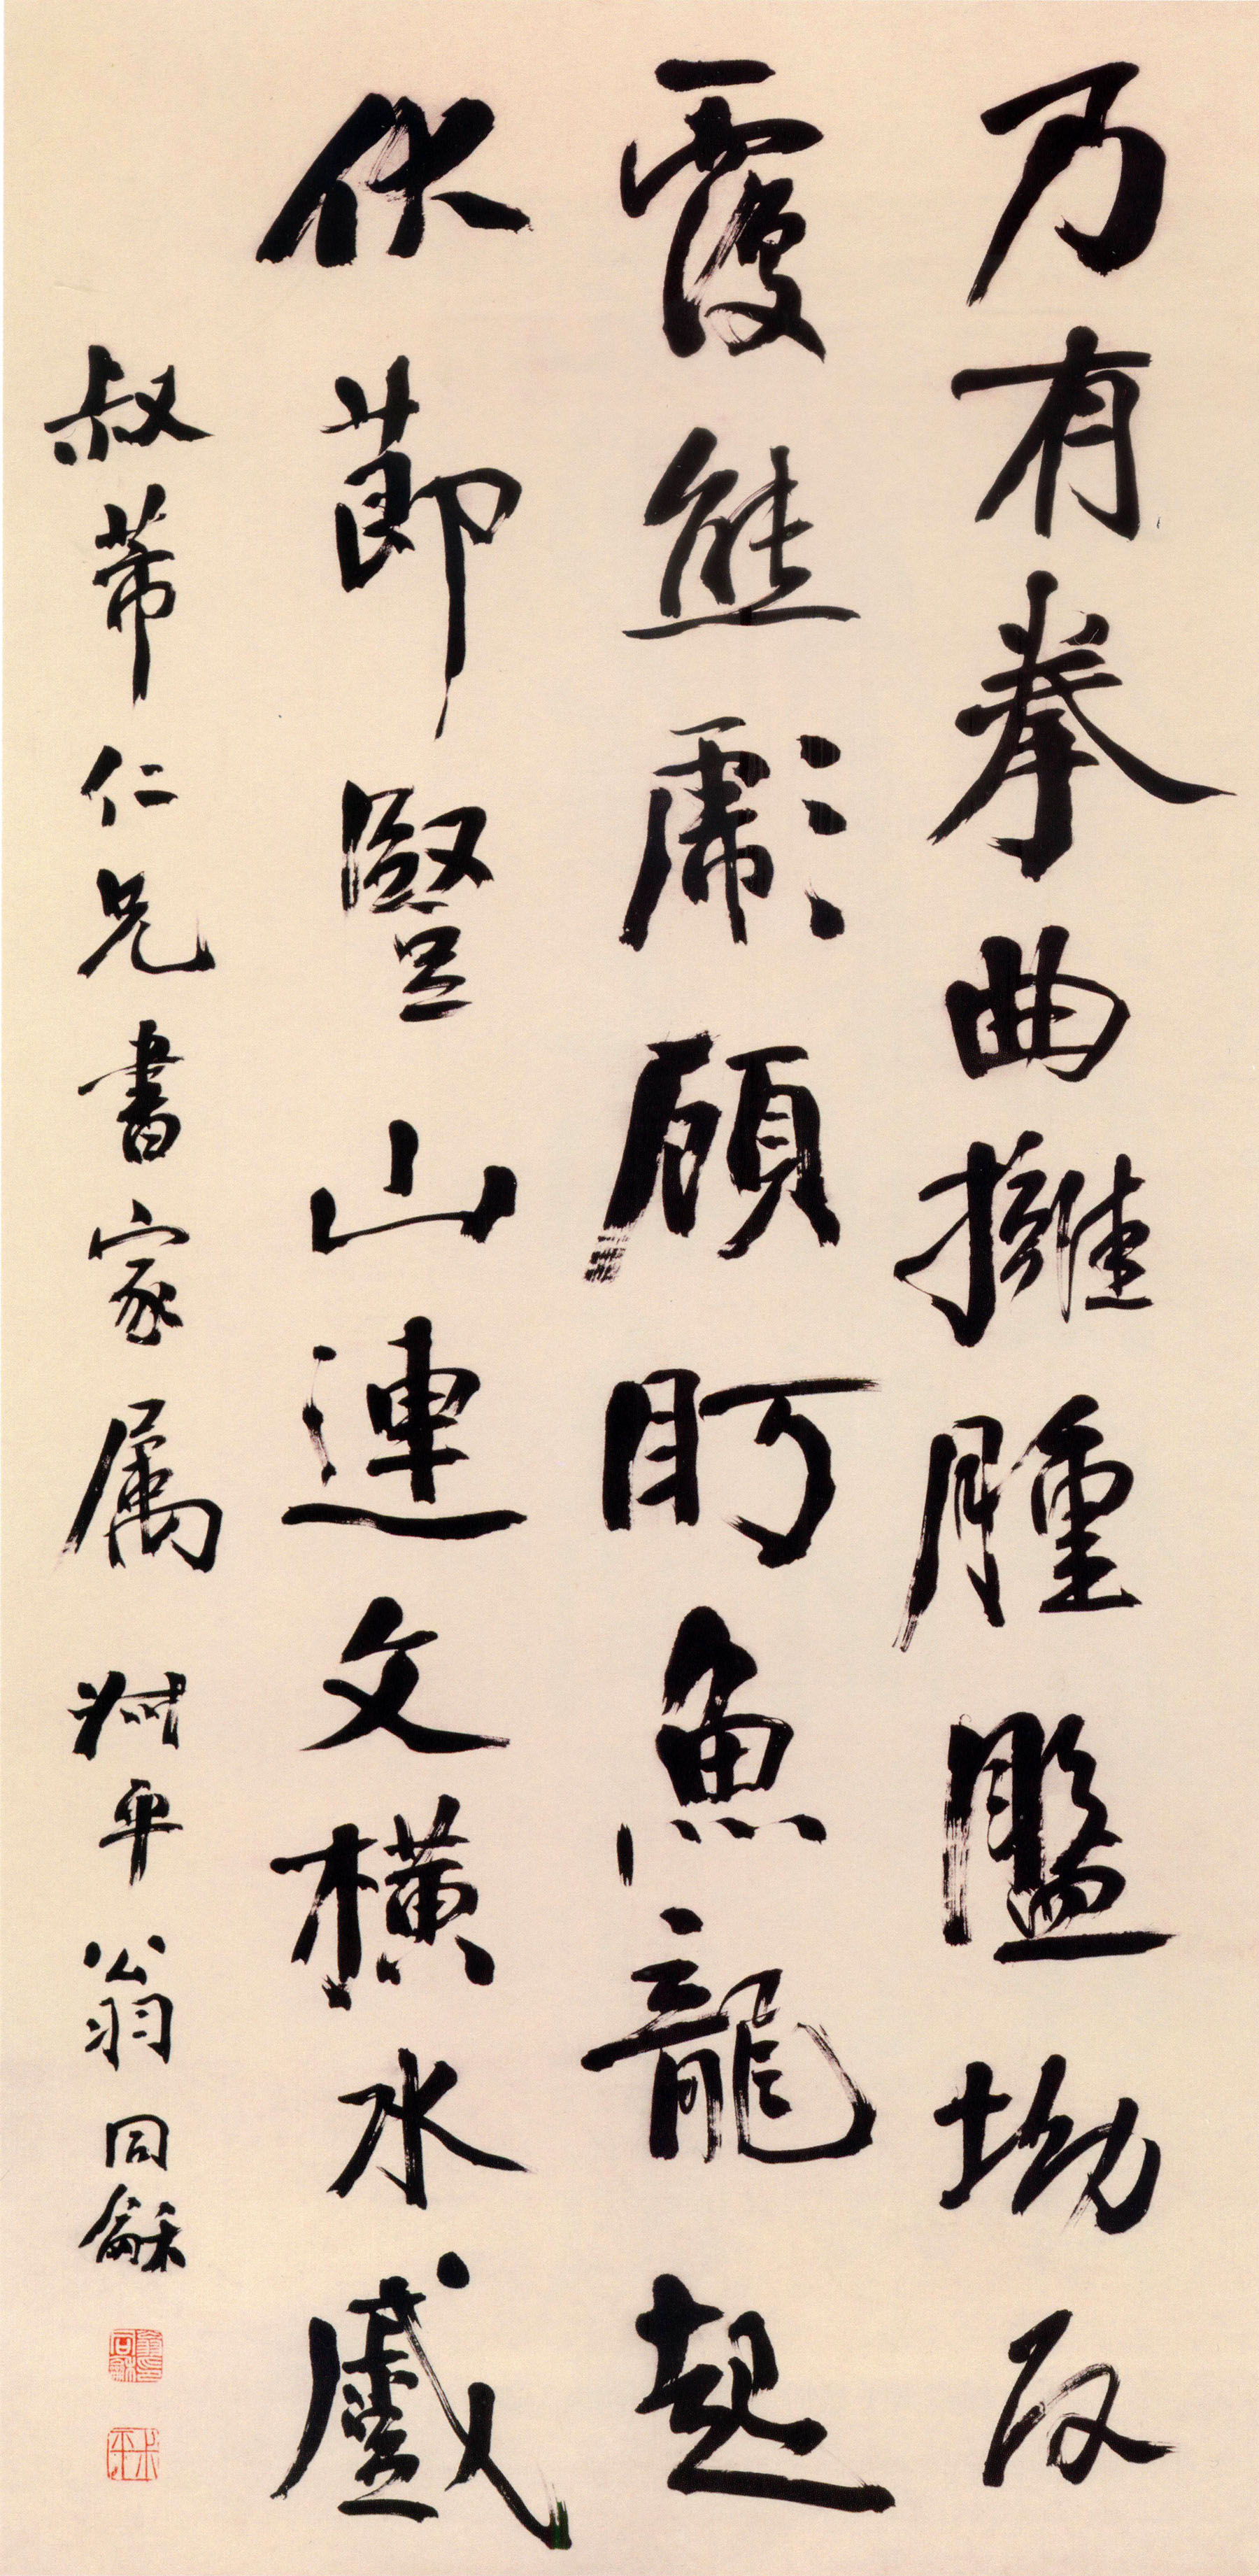 翁同龢《行书节录枯树赋轴》-北京故宫博物院藏(图1)